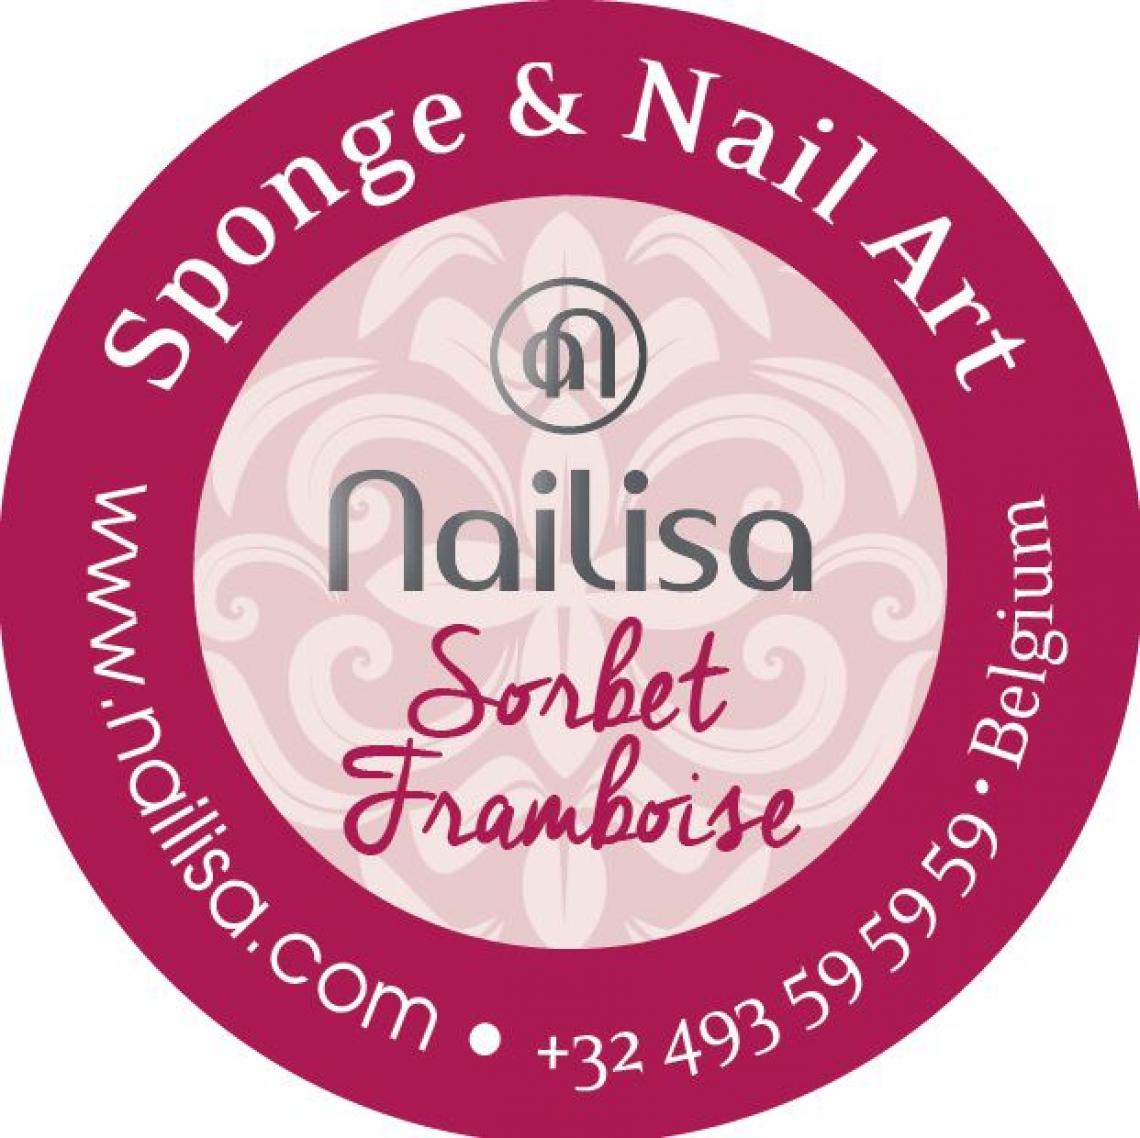 Painting Gel Sponge & Nail Art - Sorbet Framboise 5ml